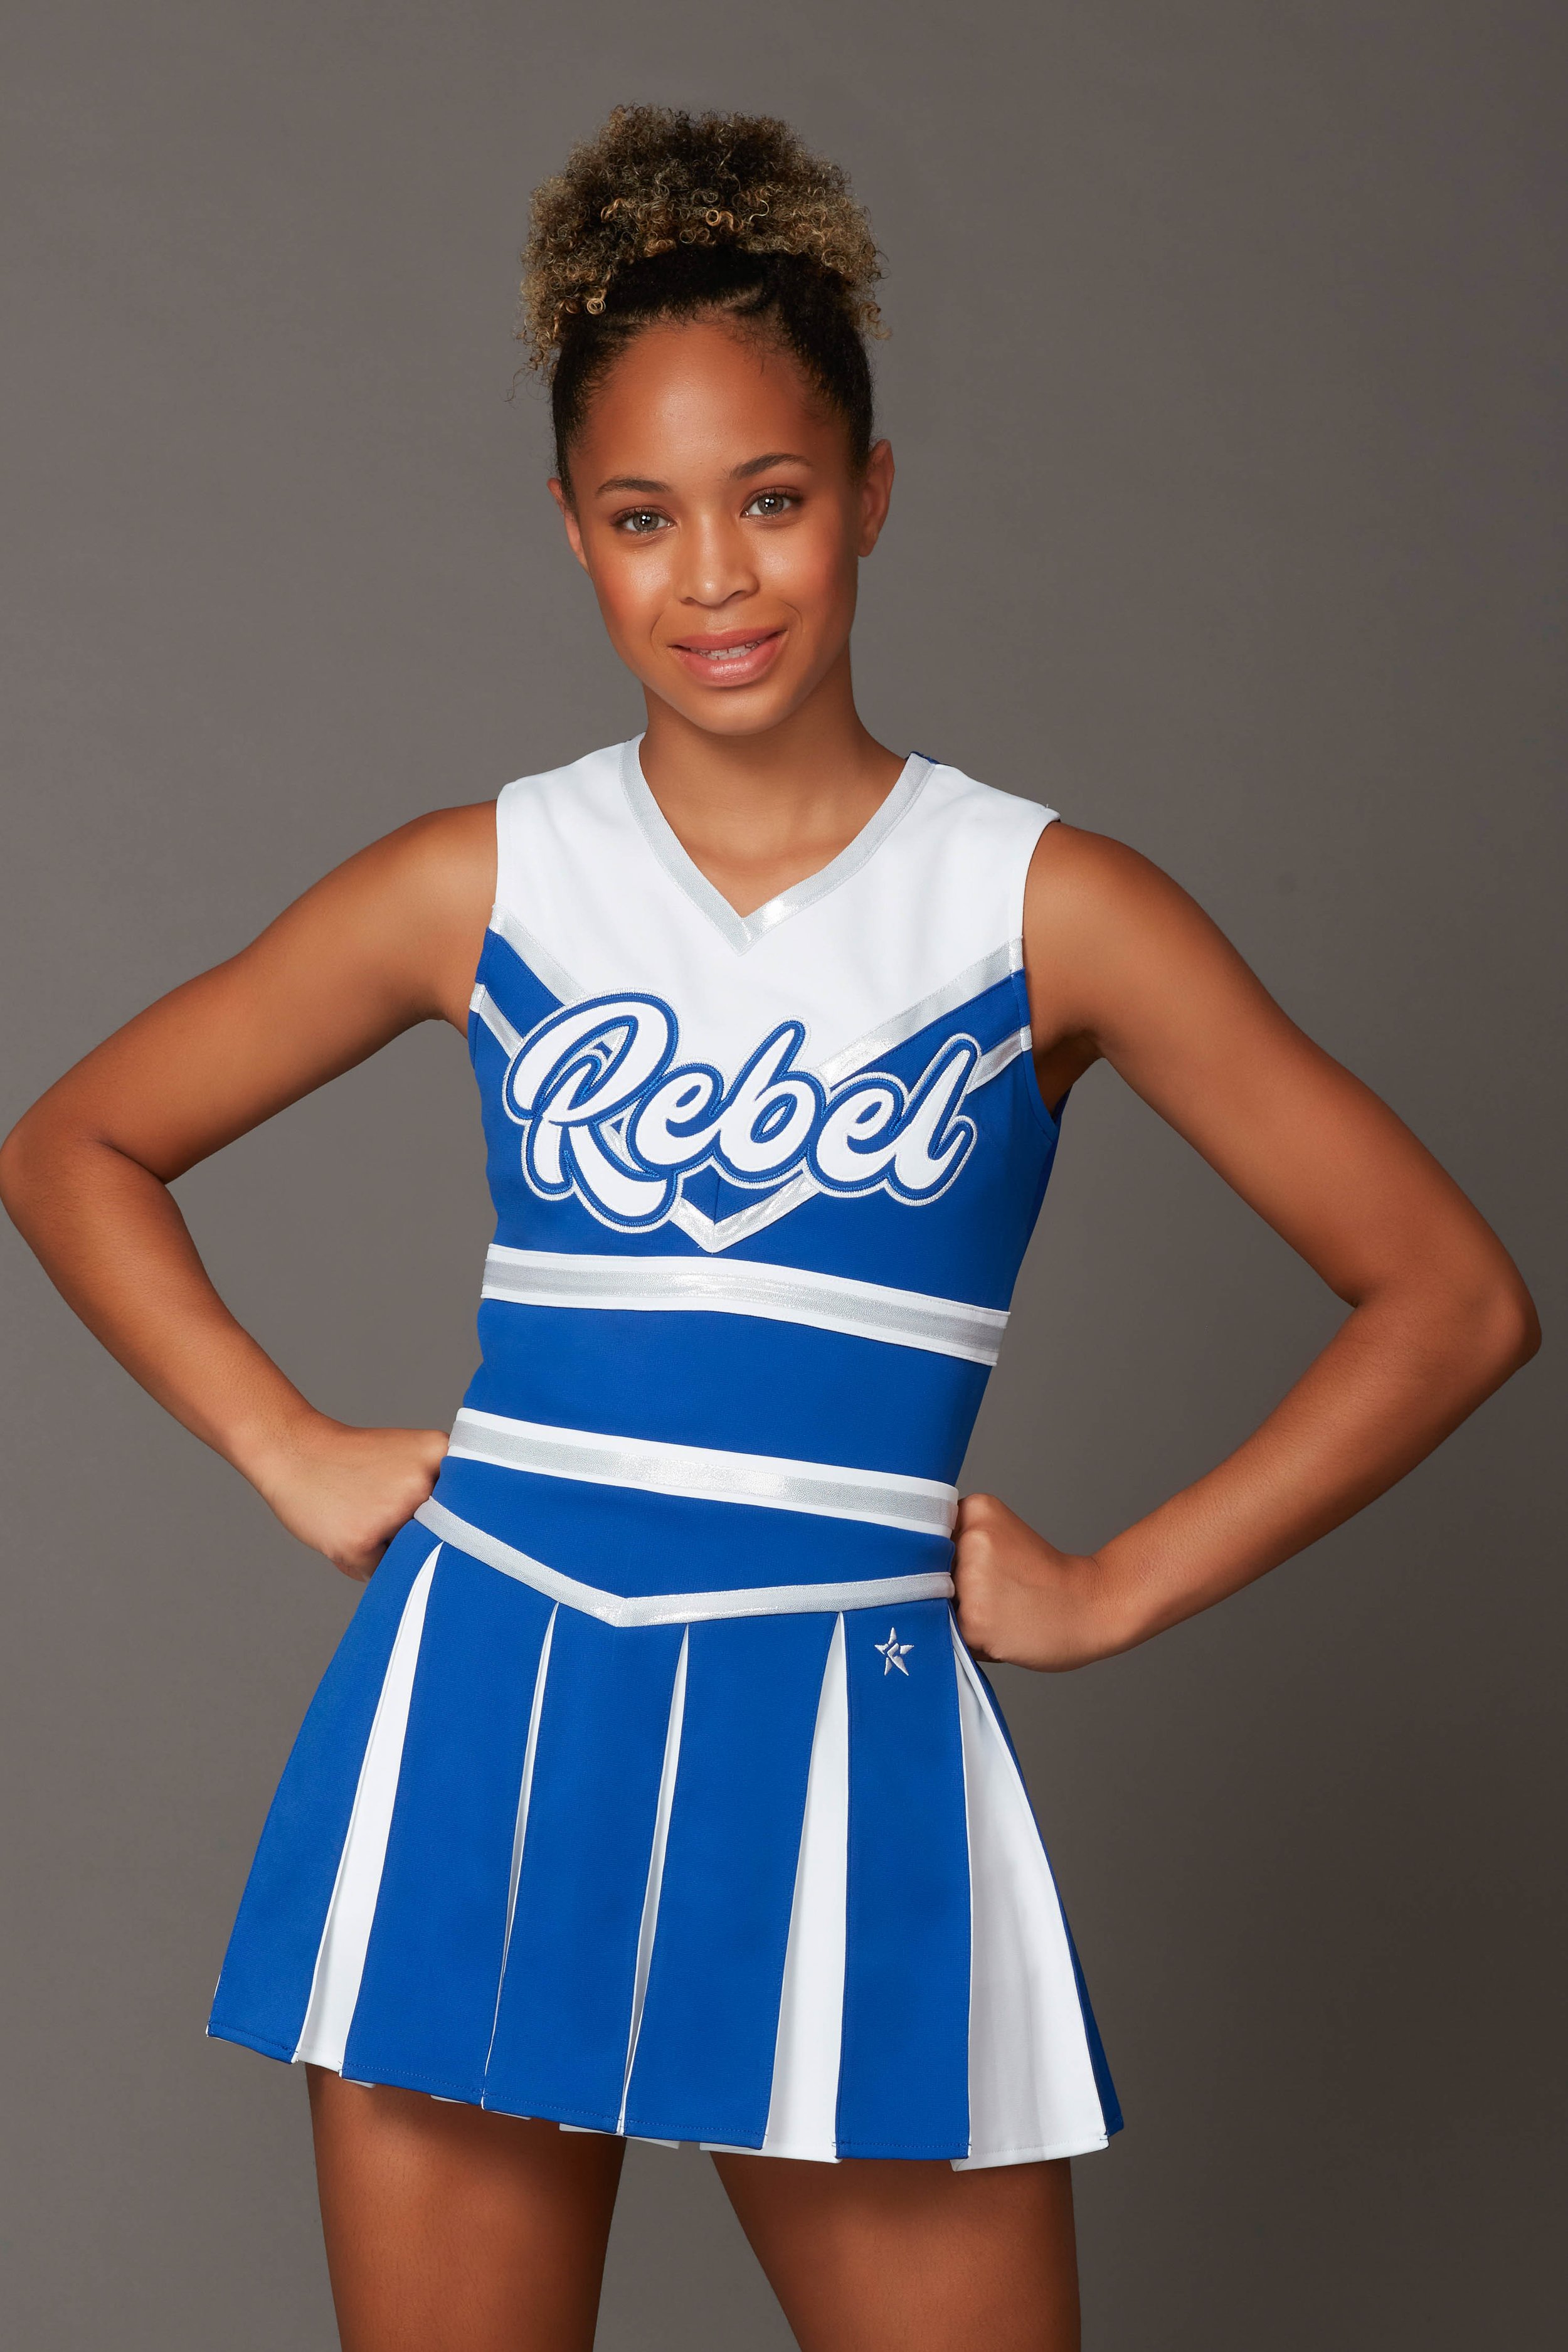 Susan School Cheer Uniform Rebel Athletic